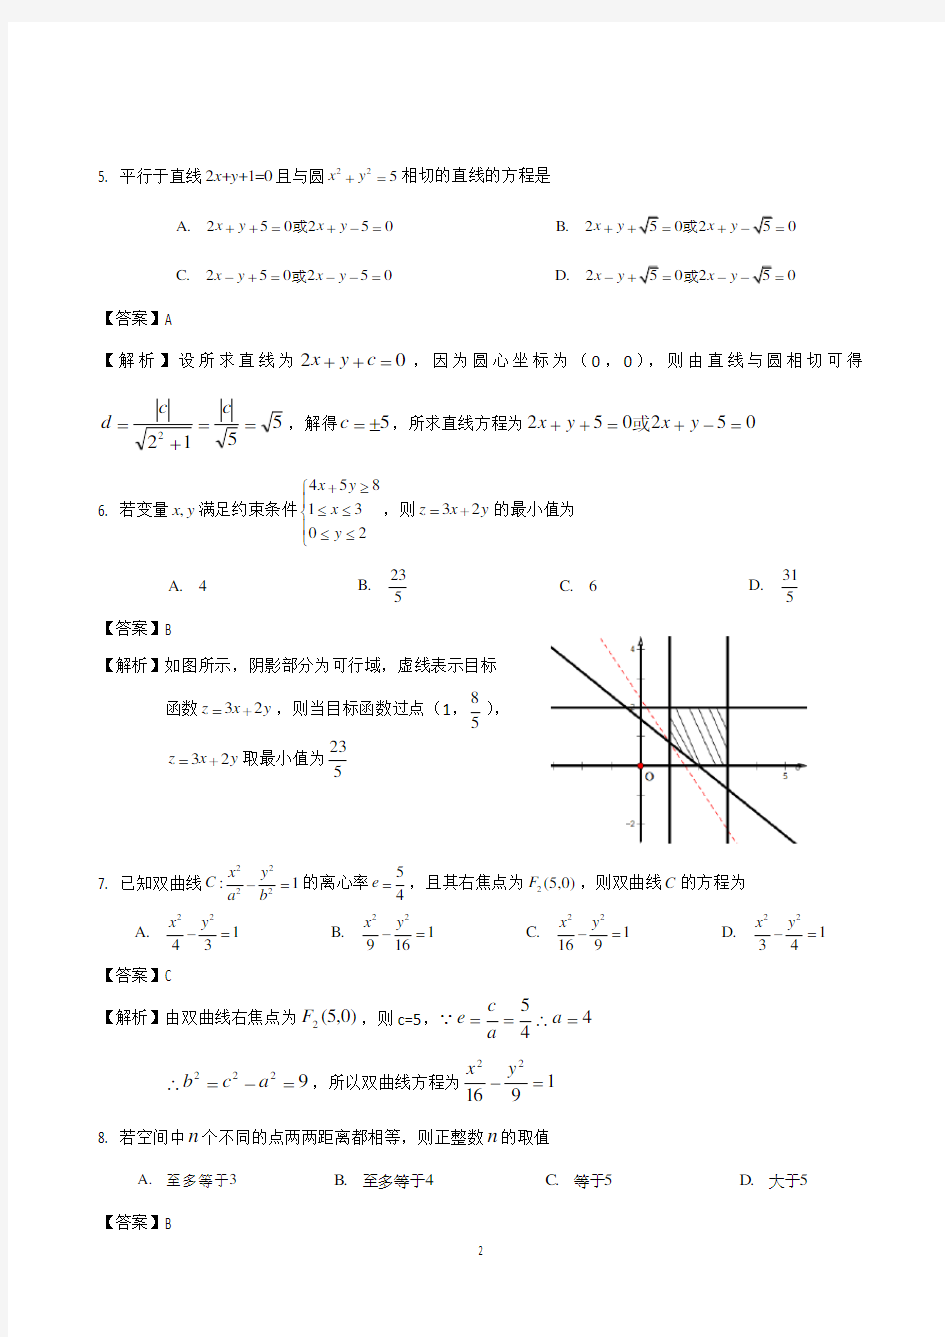 2015广东高考数学(理科)试题及答案解析版